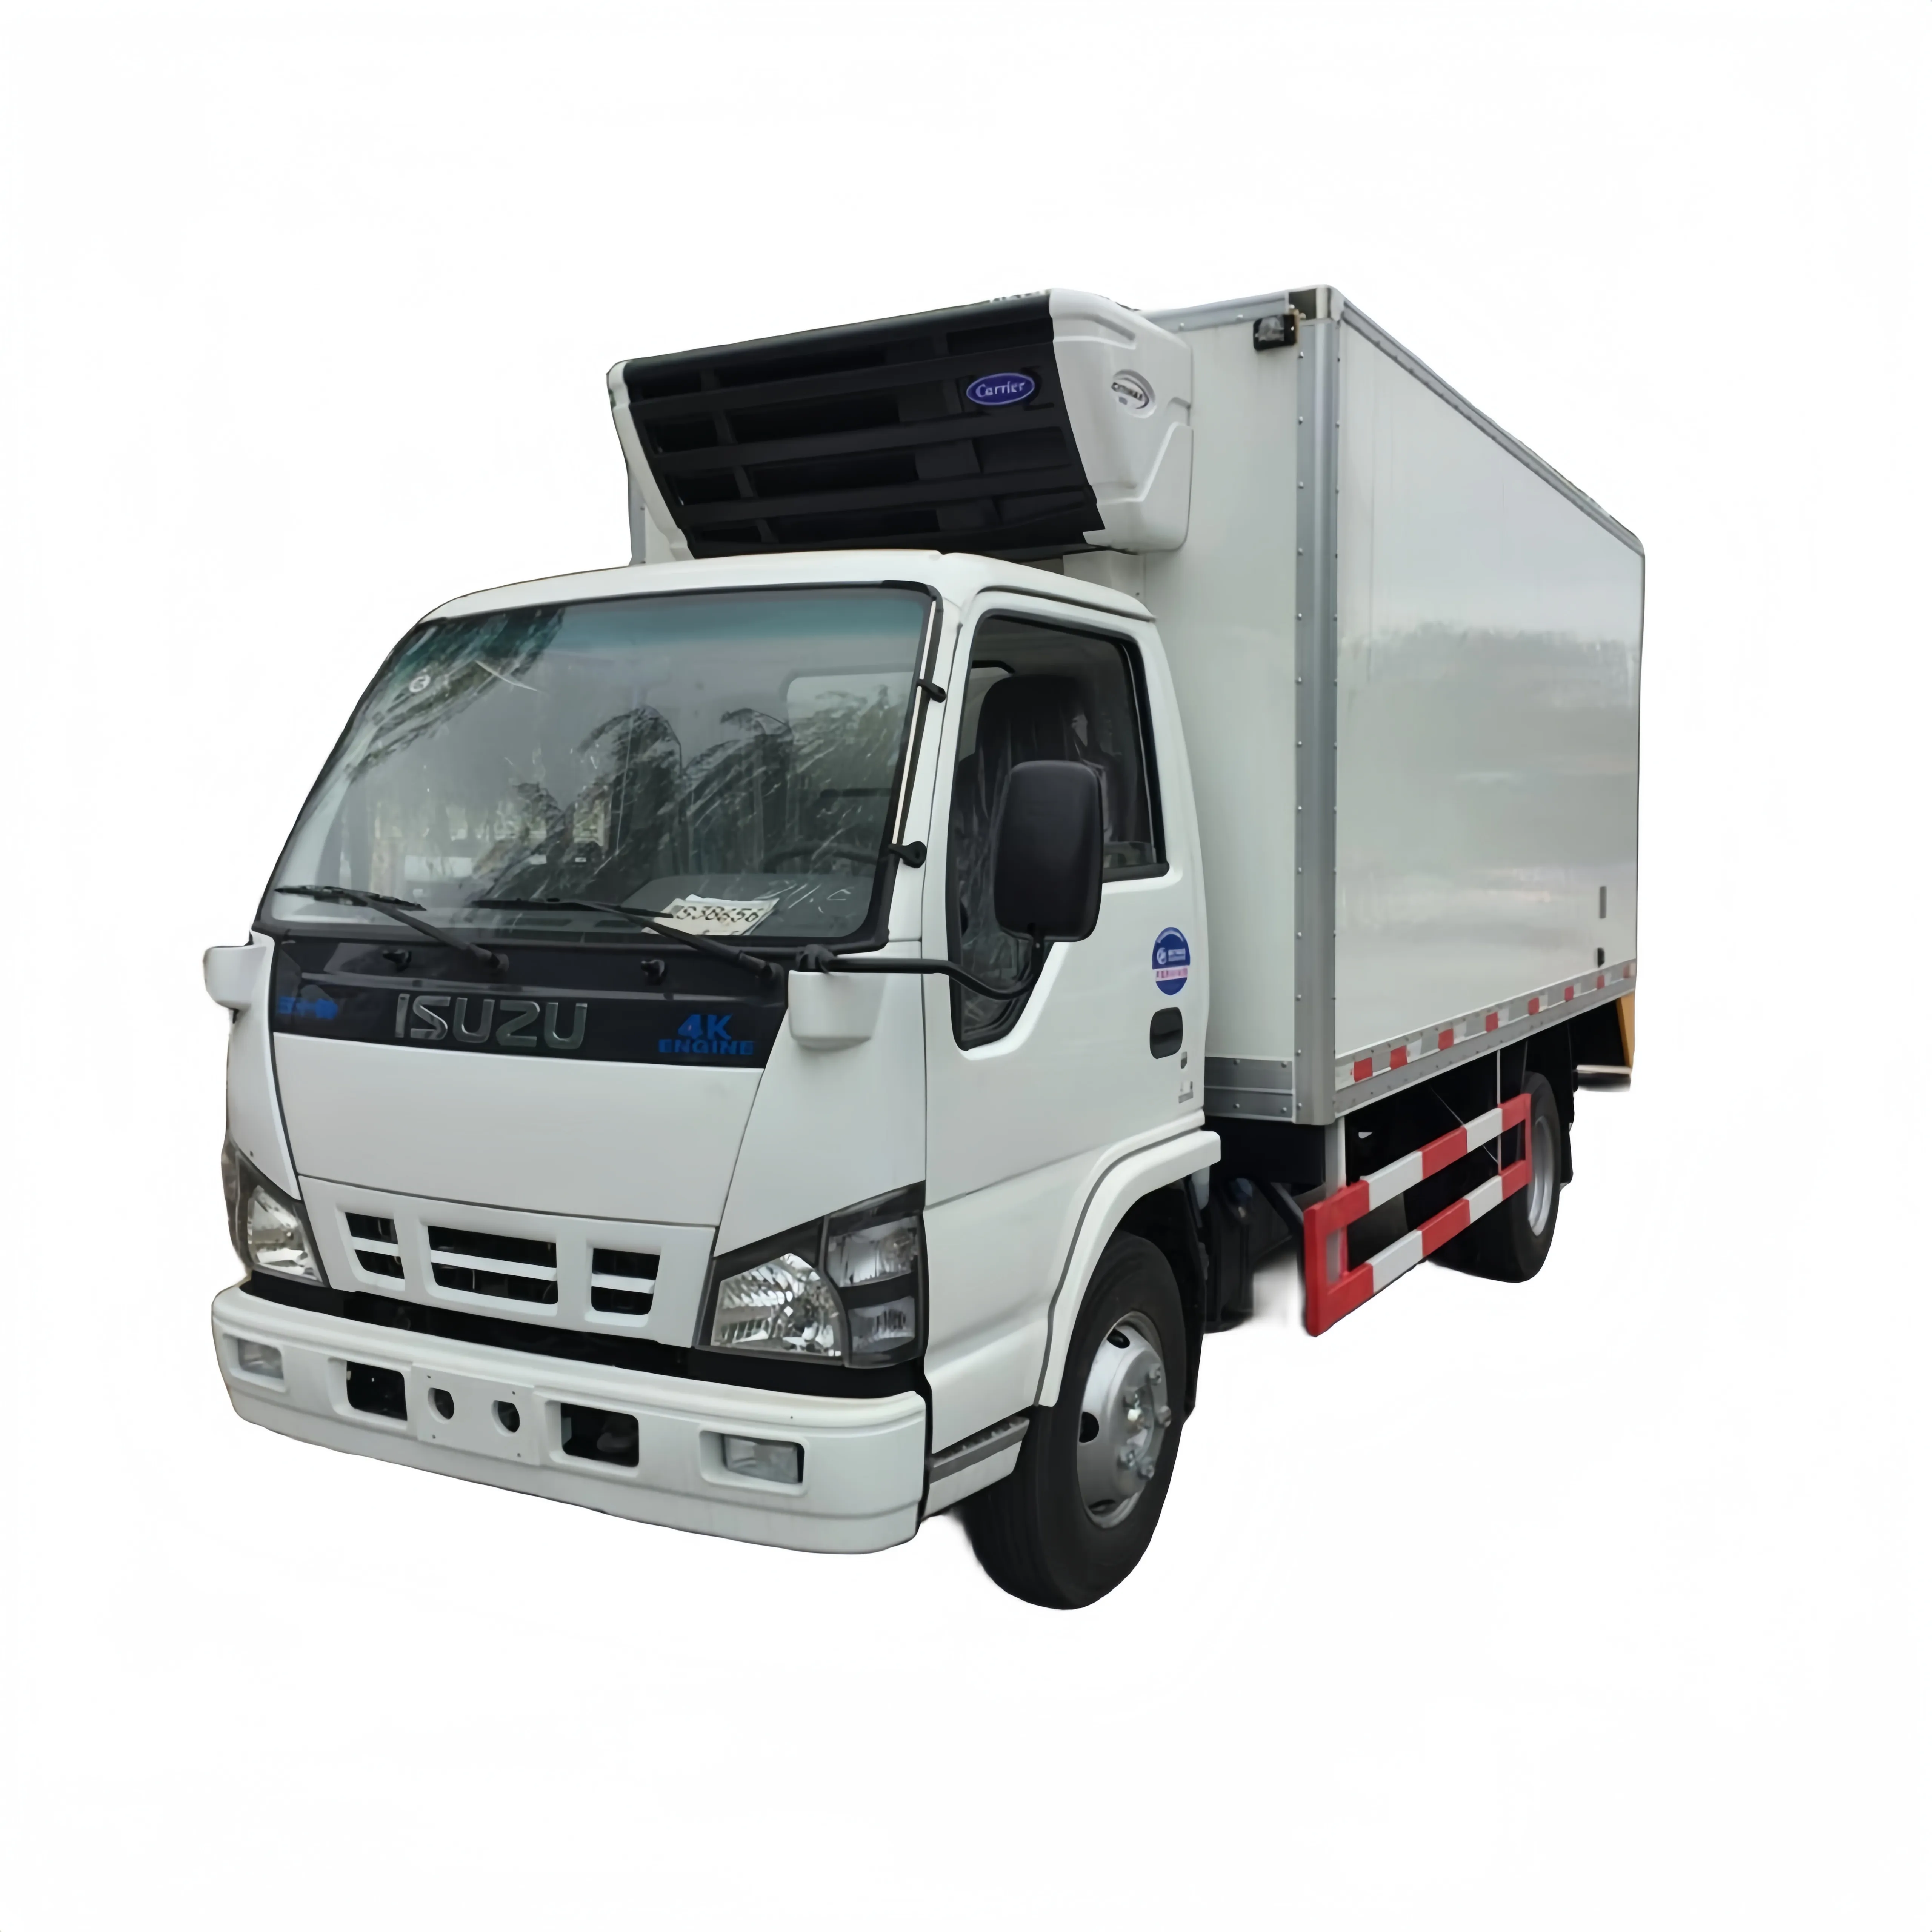 Продается новый и Подержанный грузовик-рефрижератор ISUZU 600P